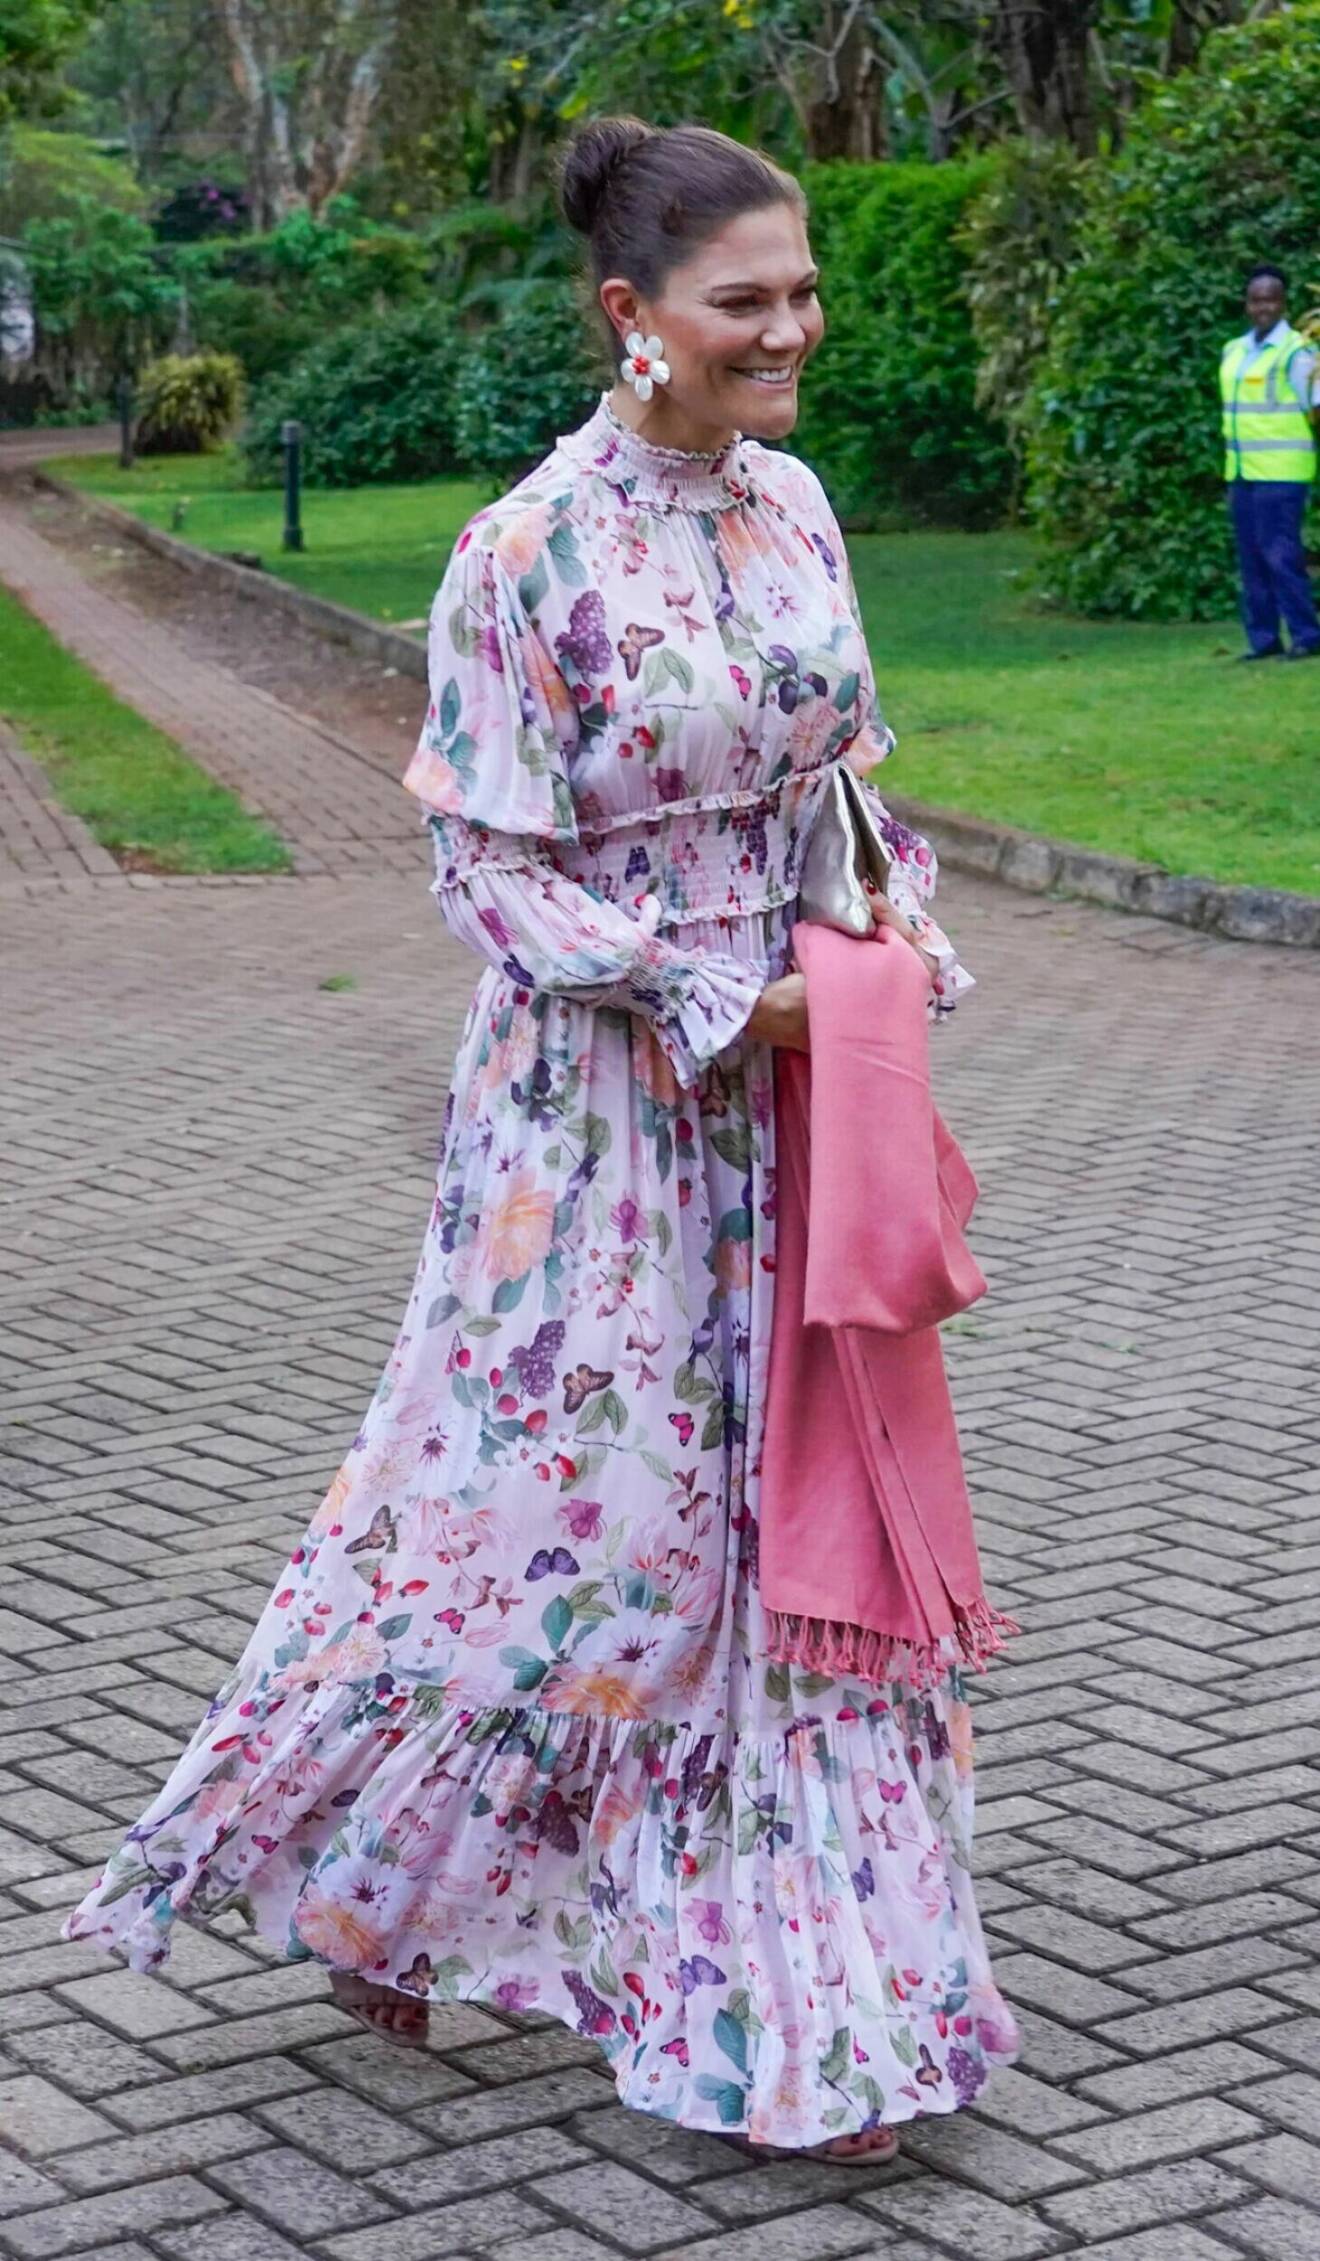 kronprinsessan victoria i en sommarfin klänning